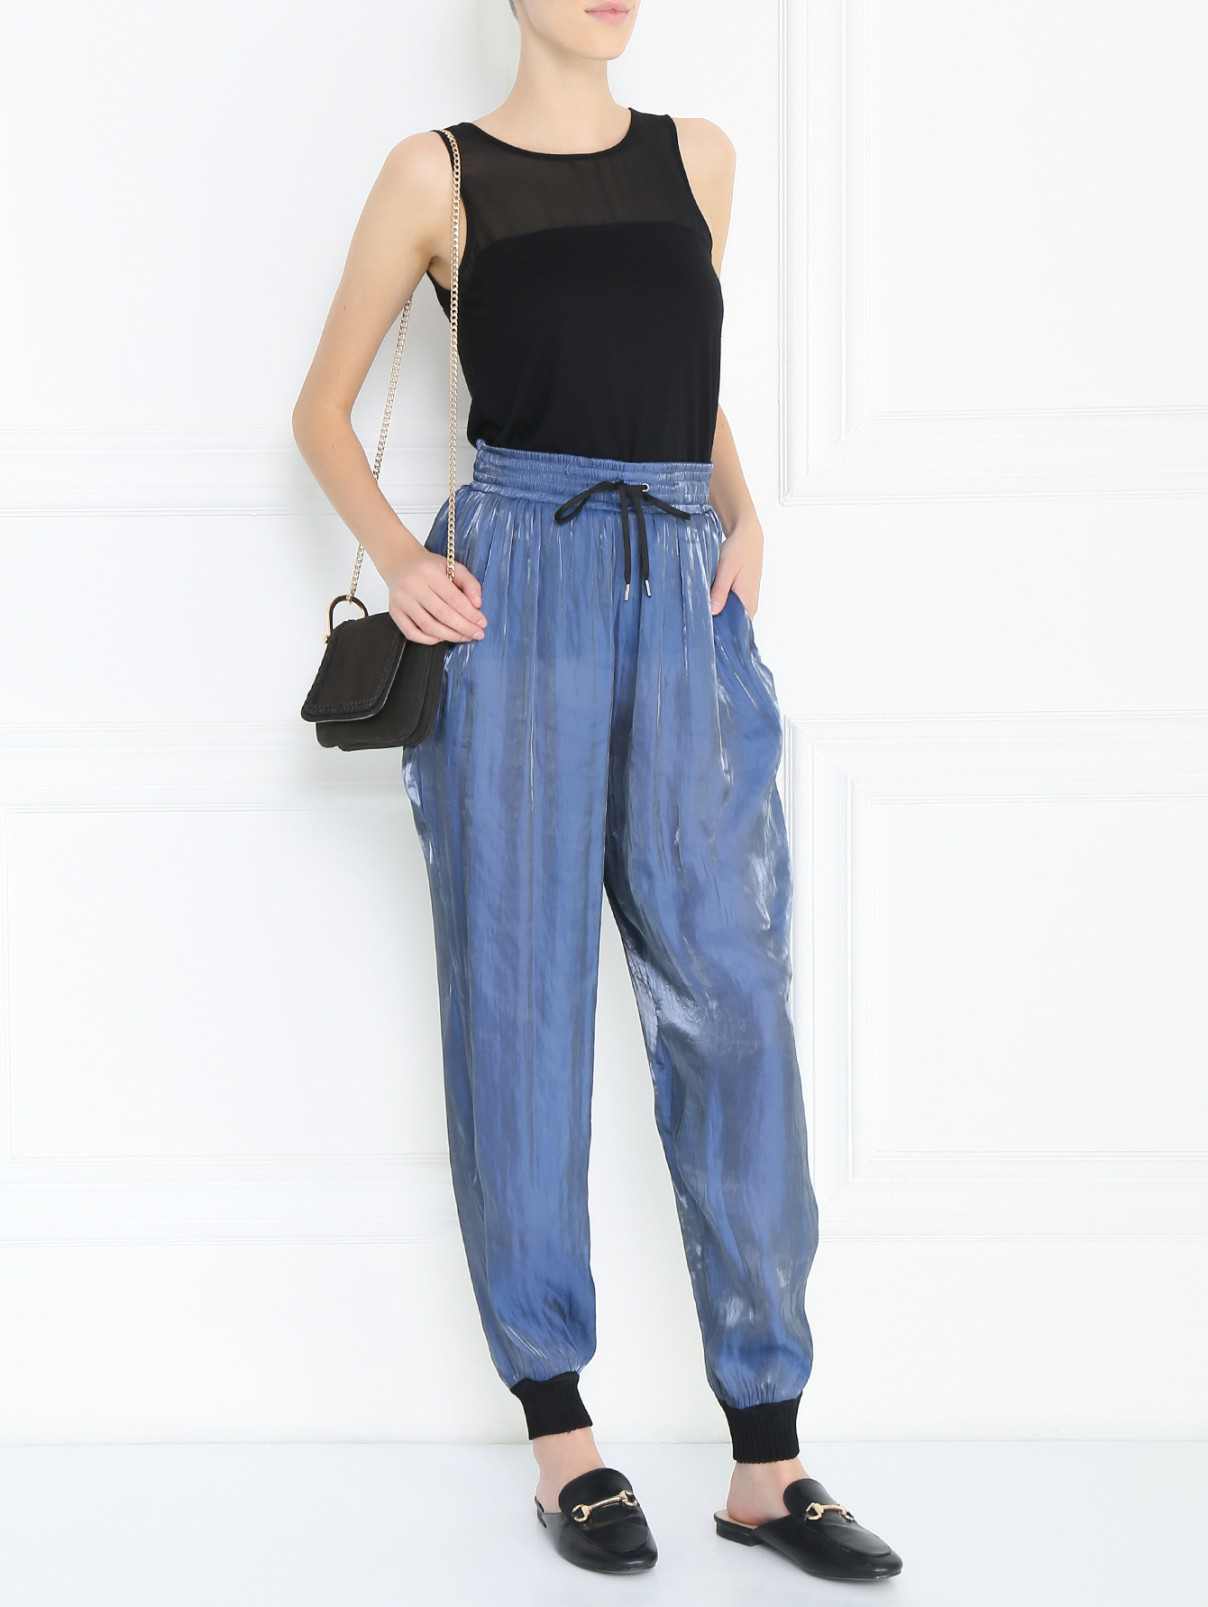 Брюки свободного кроя на резинке с карманами Jean Paul Gaultier  –  Модель Общий вид  – Цвет:  Синий